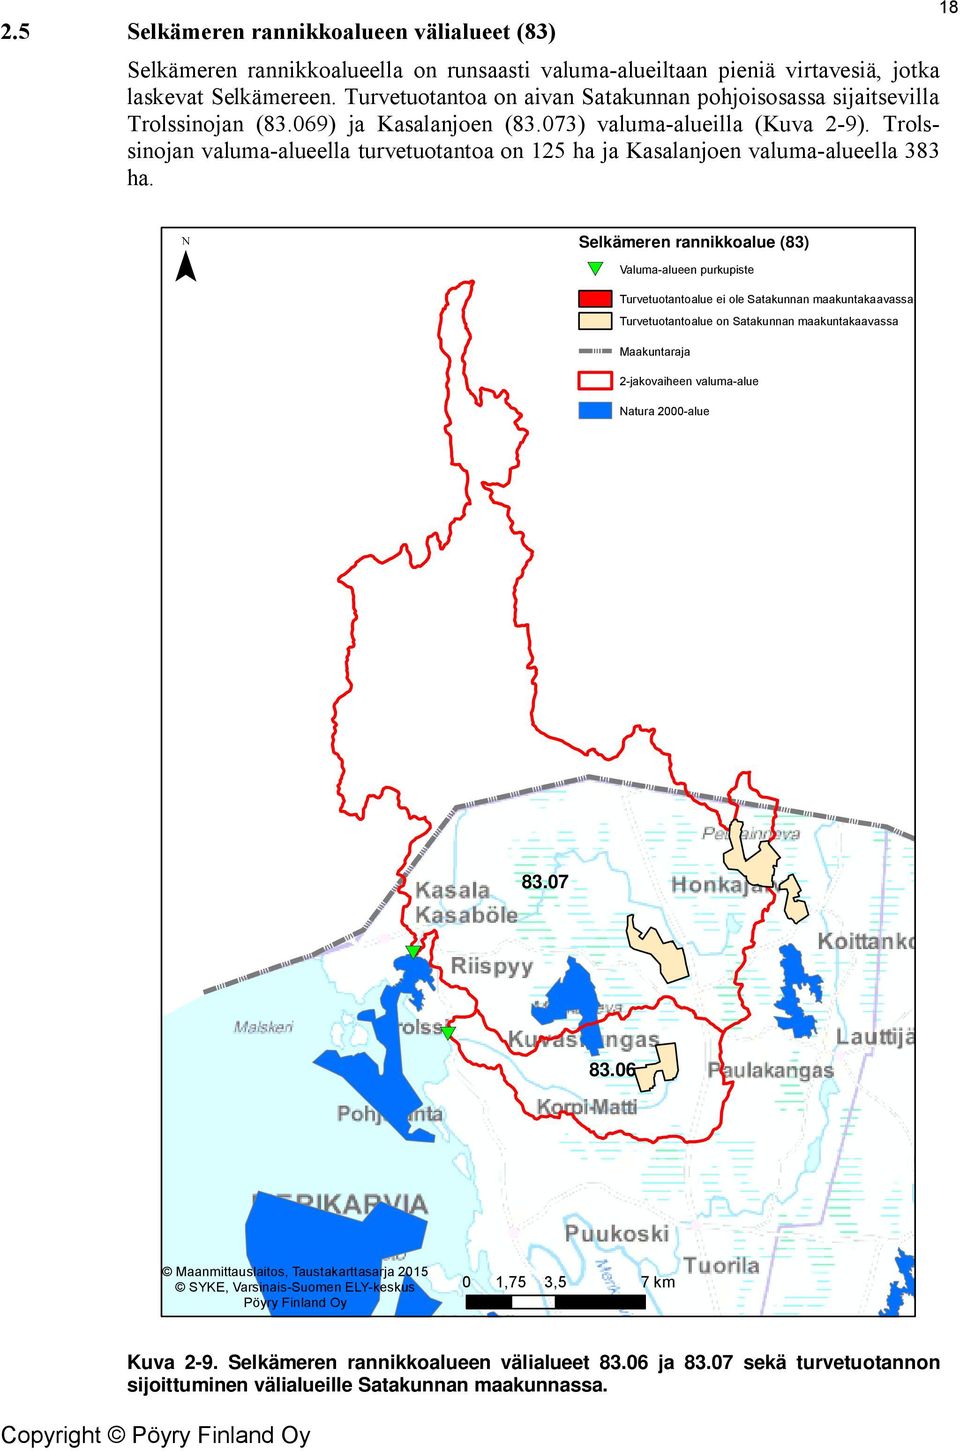 Trolssinojan valuma-alueella turvetuotantoa on 125 ha ja Kasalanjoen valuma-alueella 383 ha.